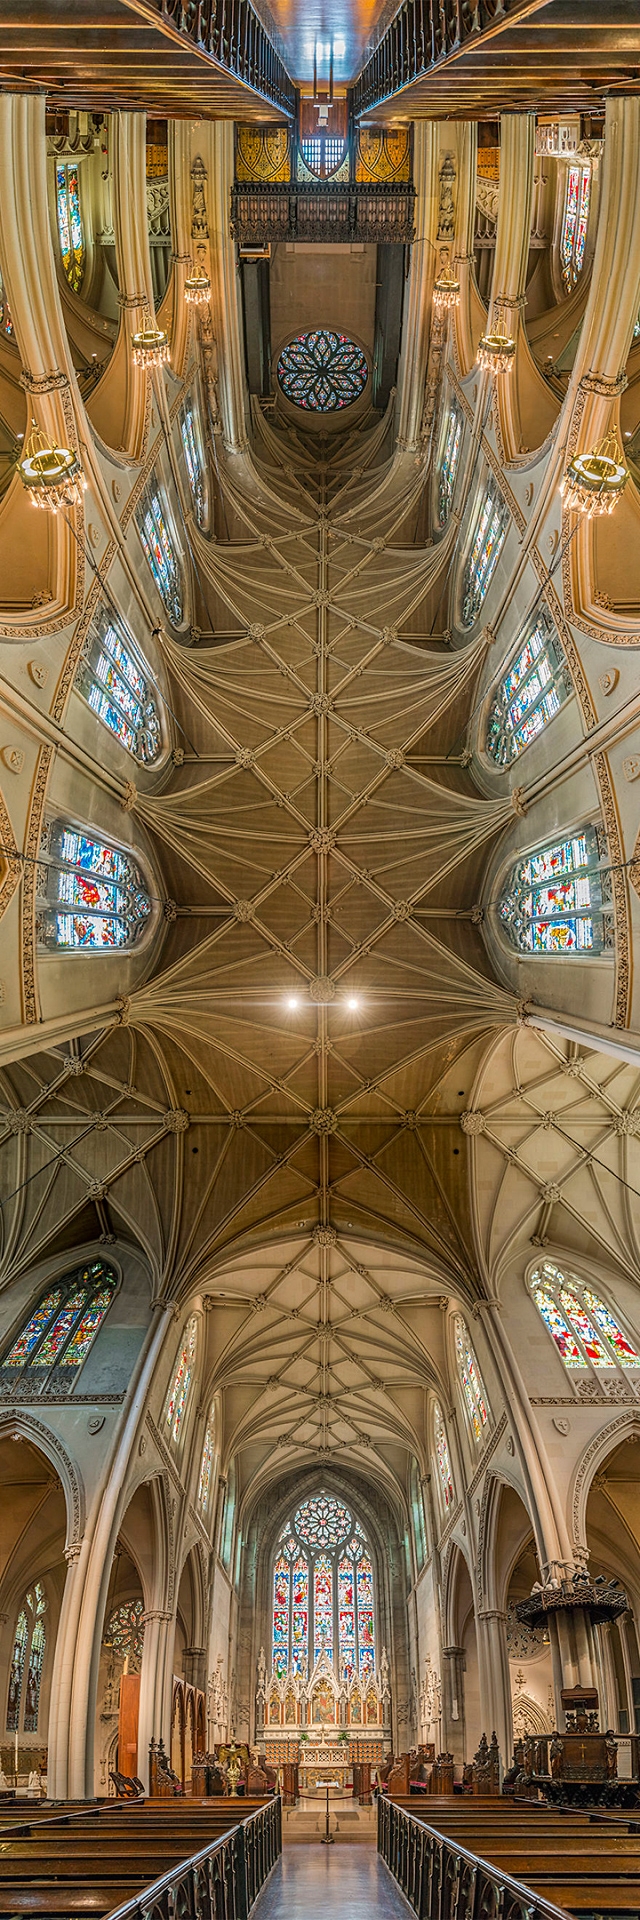 全球最美教堂的 180 度纵向摄影